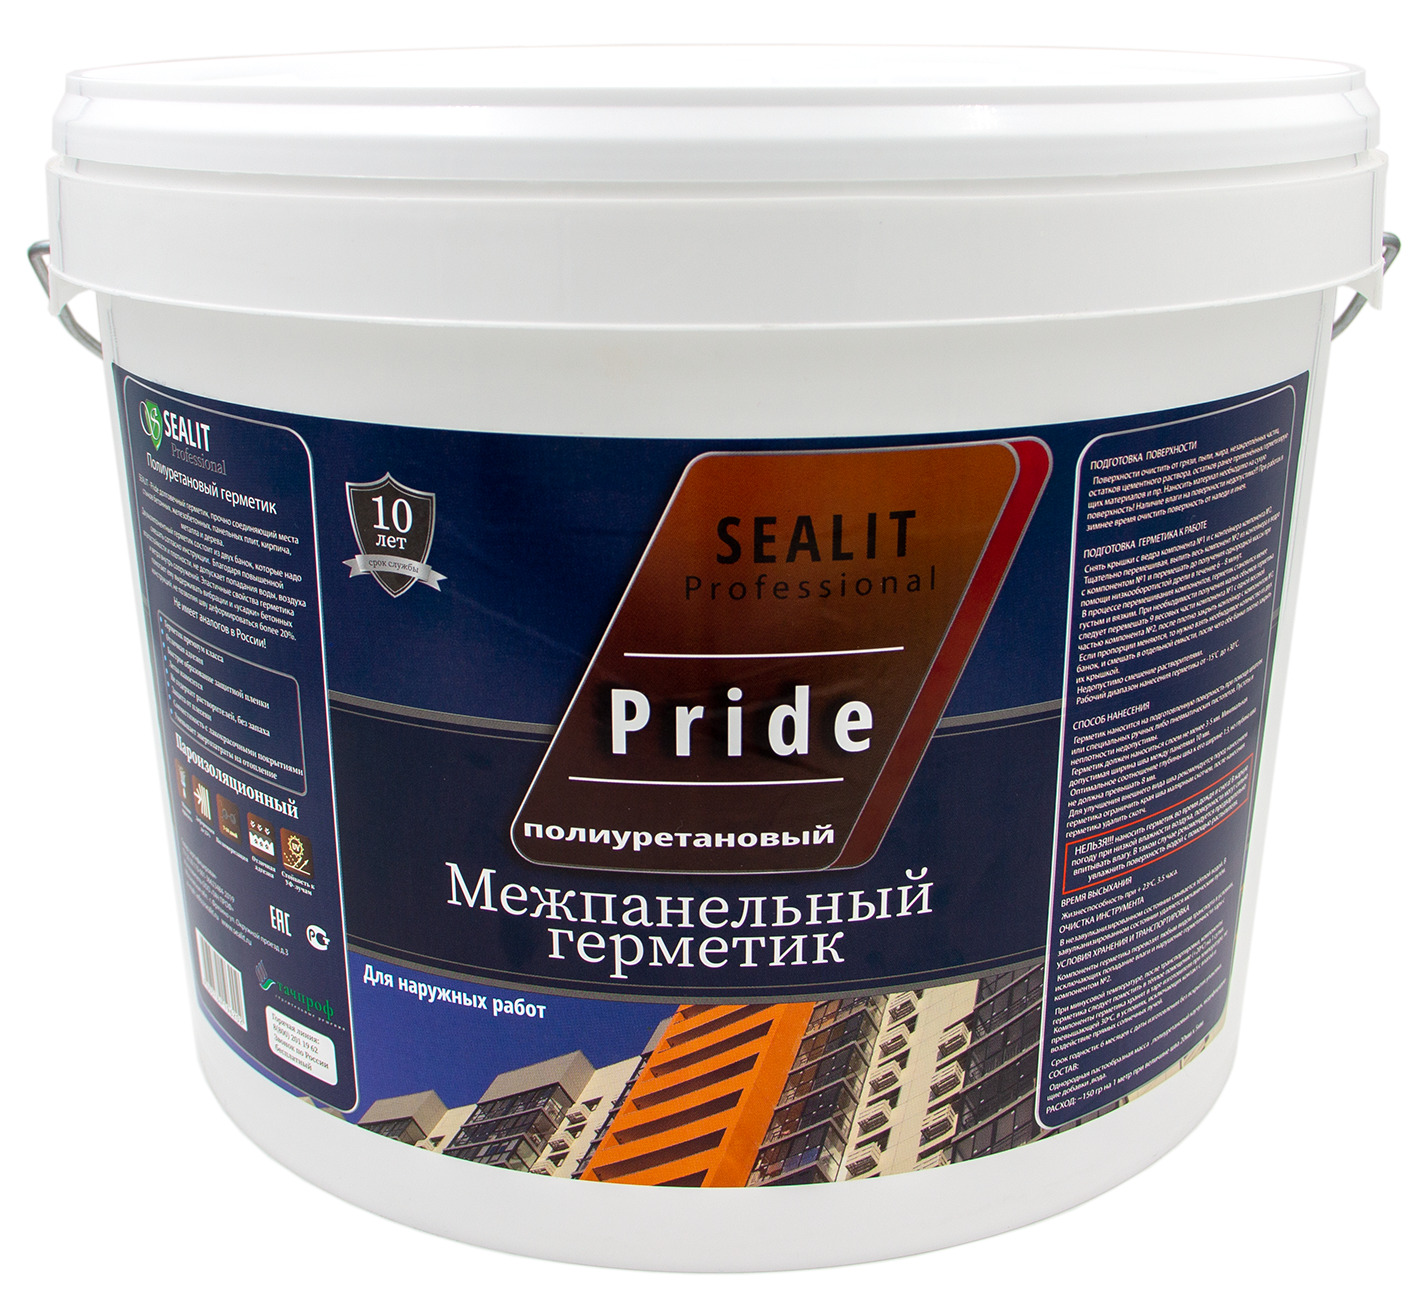 Двухкомпонентный герметик для межпанельных швов Sealit Pride 12,5 кг, серый герметик для межпанельных швоd и бетона invamat серый 310 мл